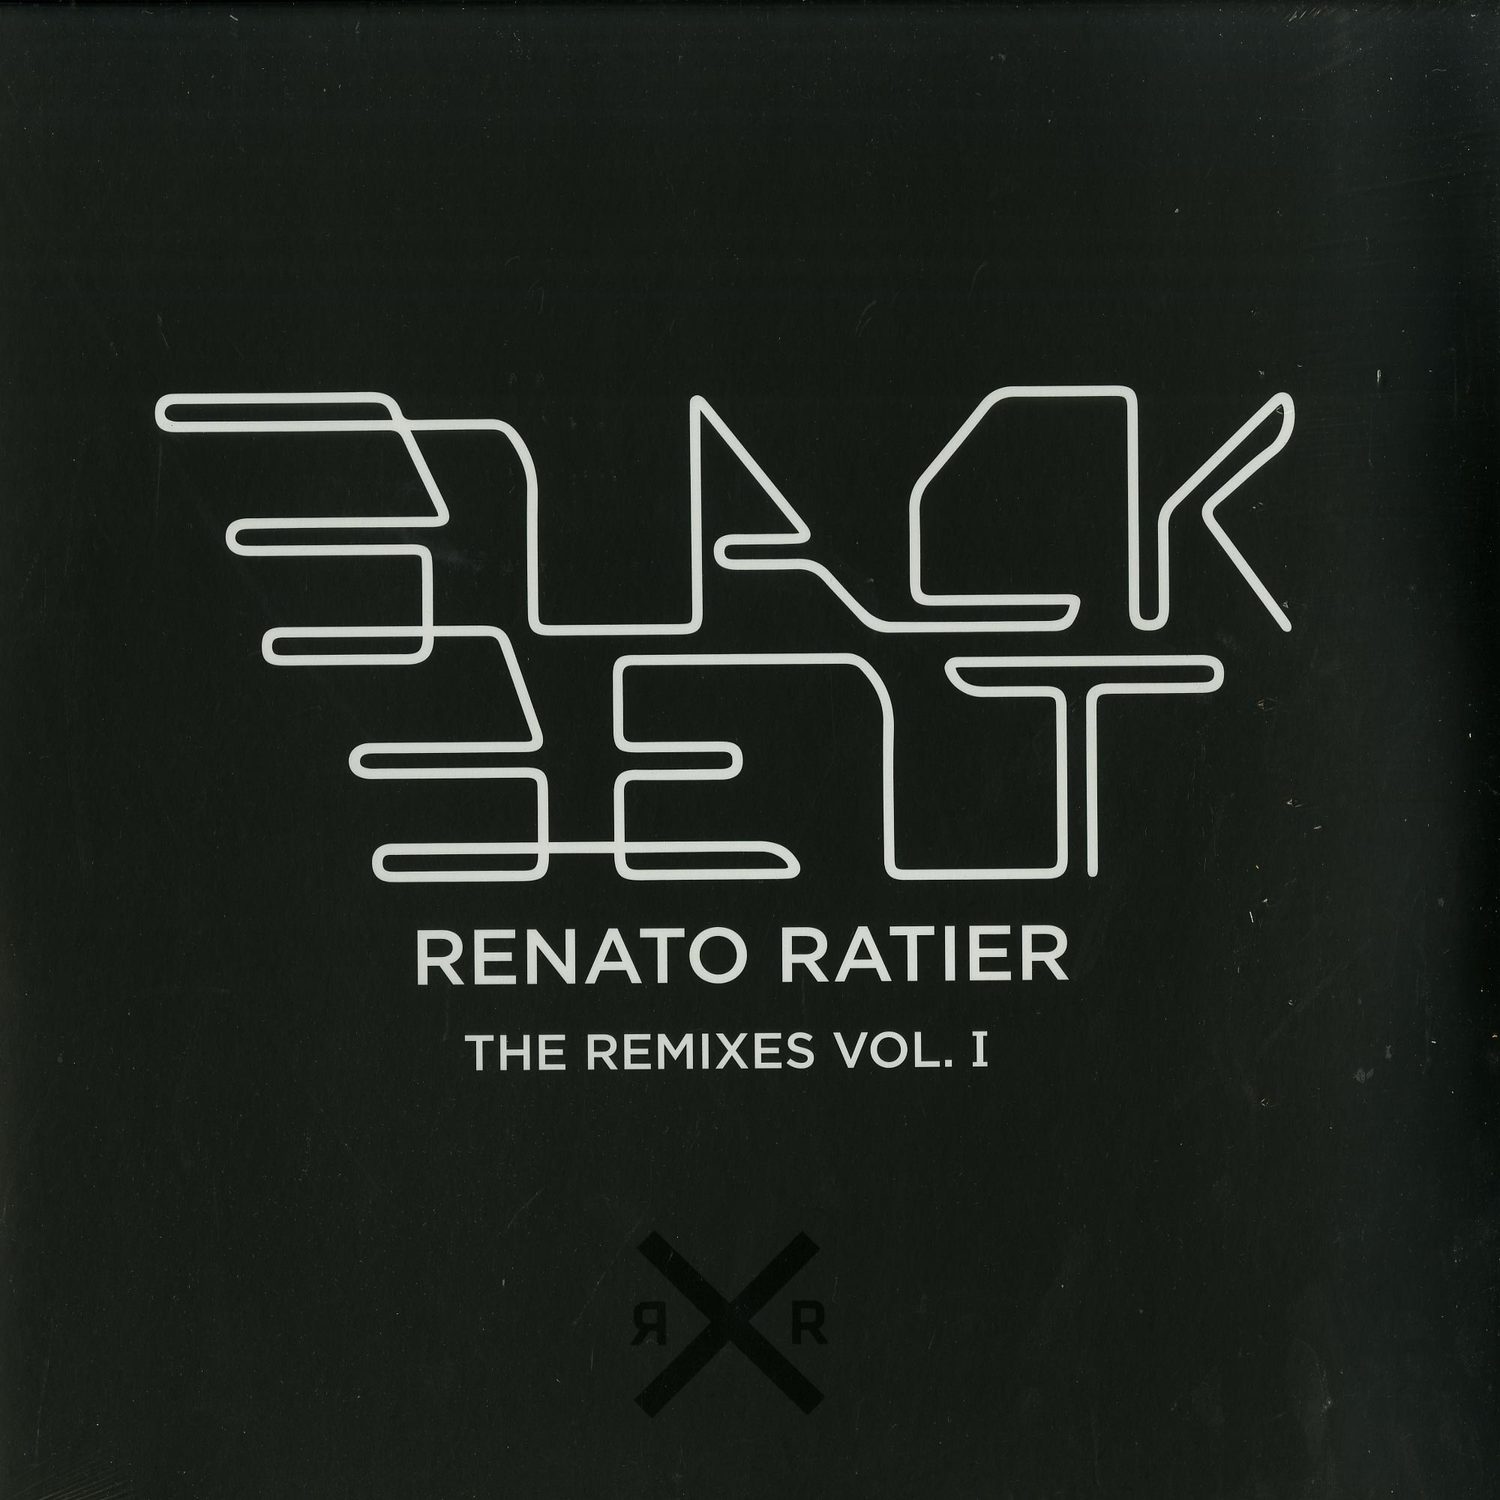 Renato Ratier - BLACK BELT - THE REMIXES VOL. 1 